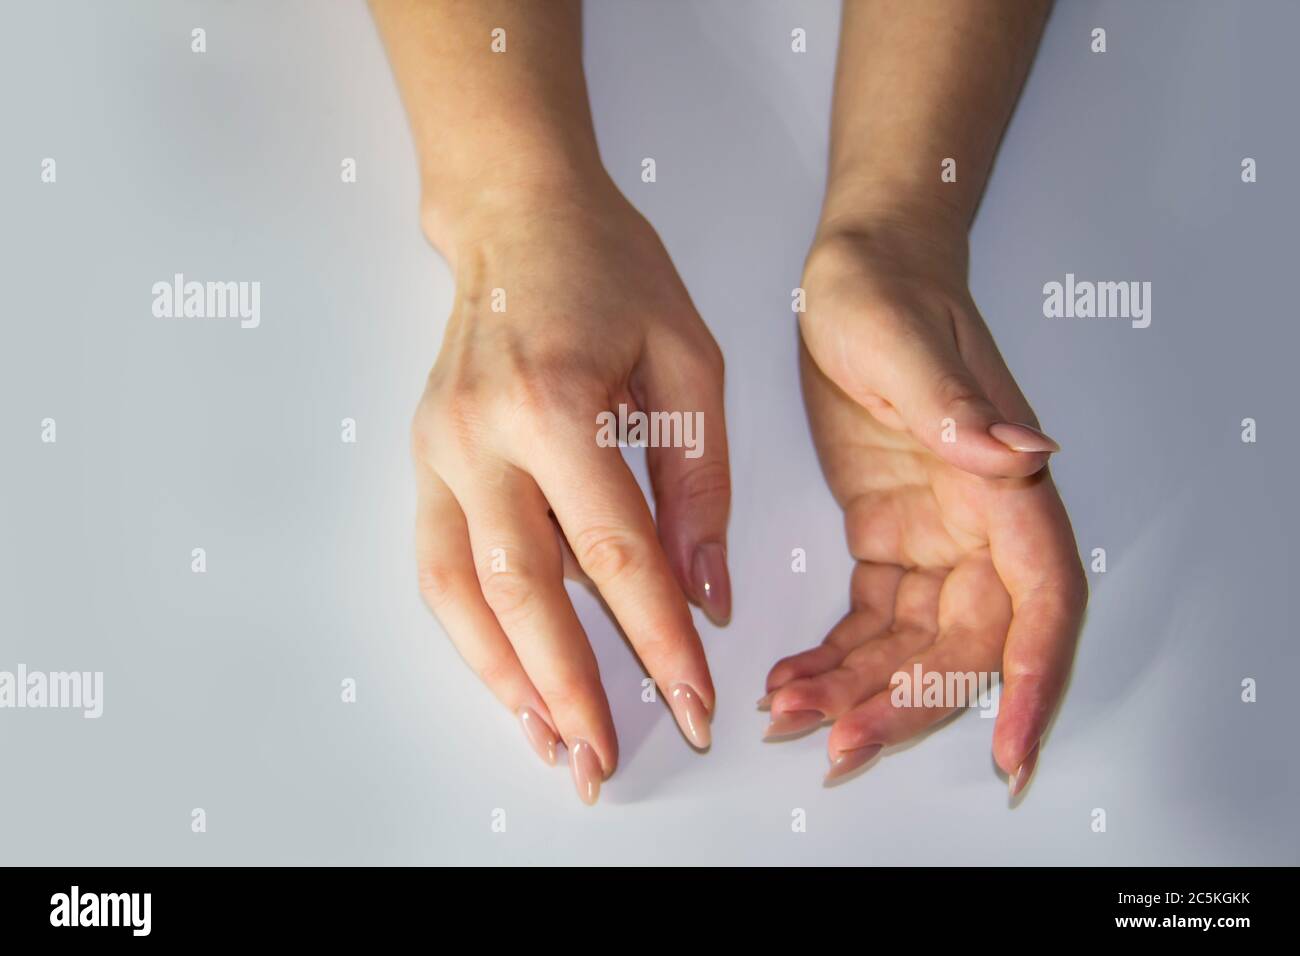 Eine Komposition von Frauen Hände, die Bewegung hellen Hintergrund zeigen. Weibliche Hände zeigen etwas. Konzept mit weiblichen Händen. Stockfoto